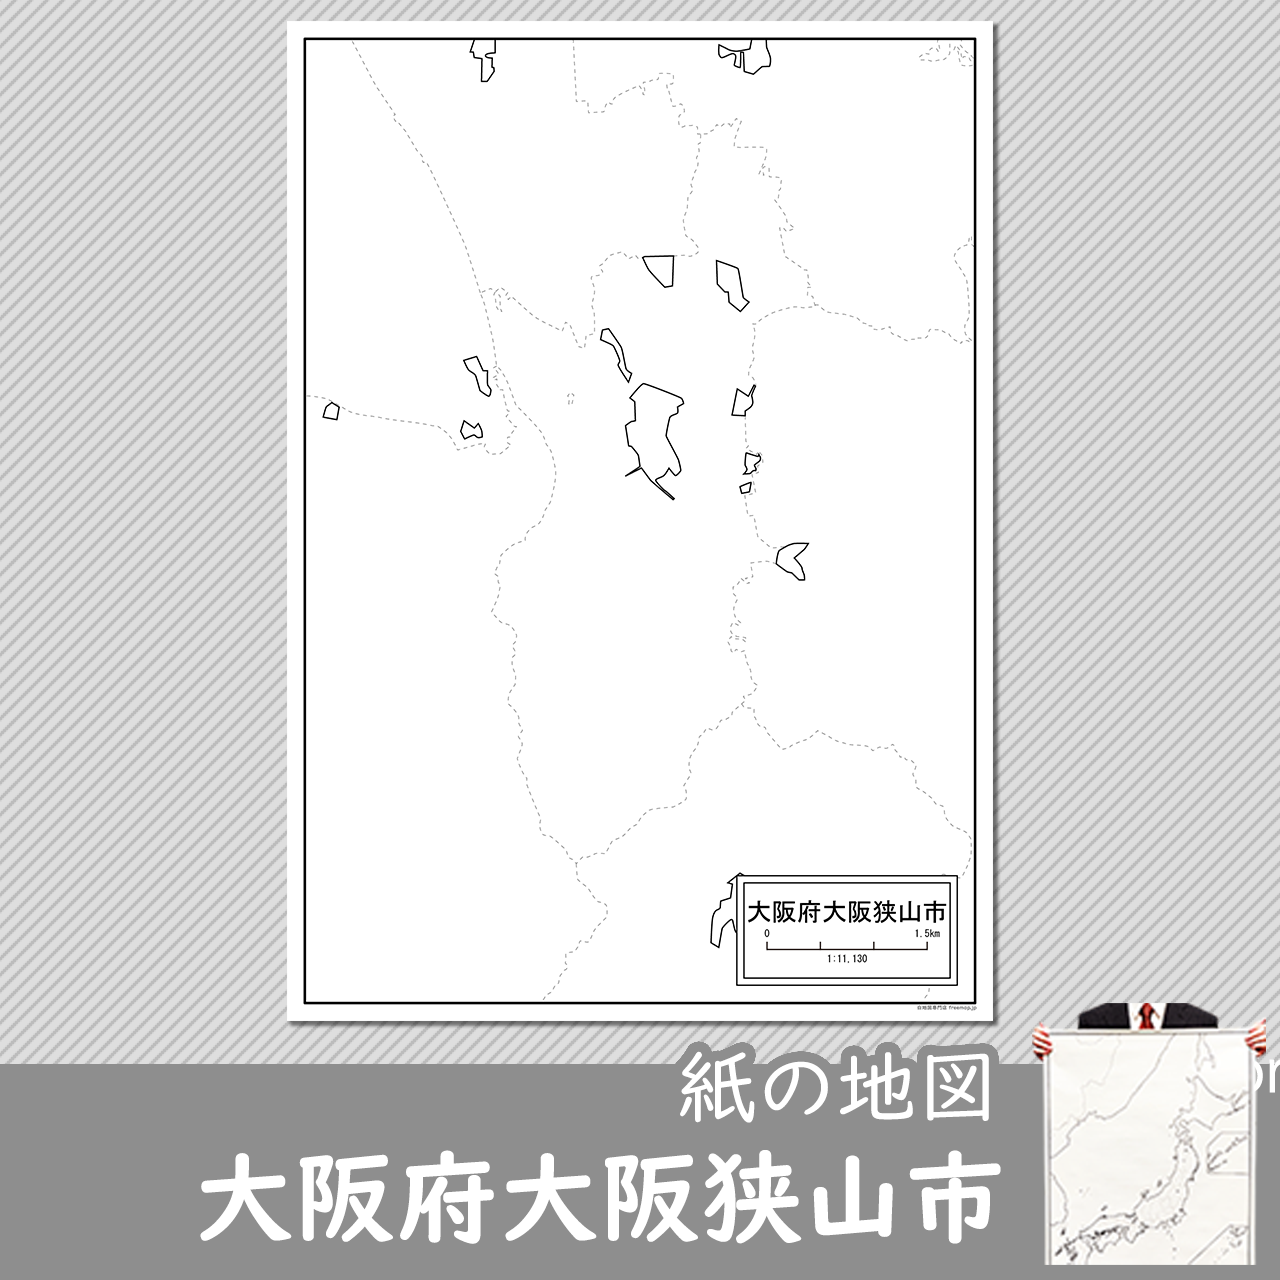 大阪狭山市の紙の白地図のサムネイル